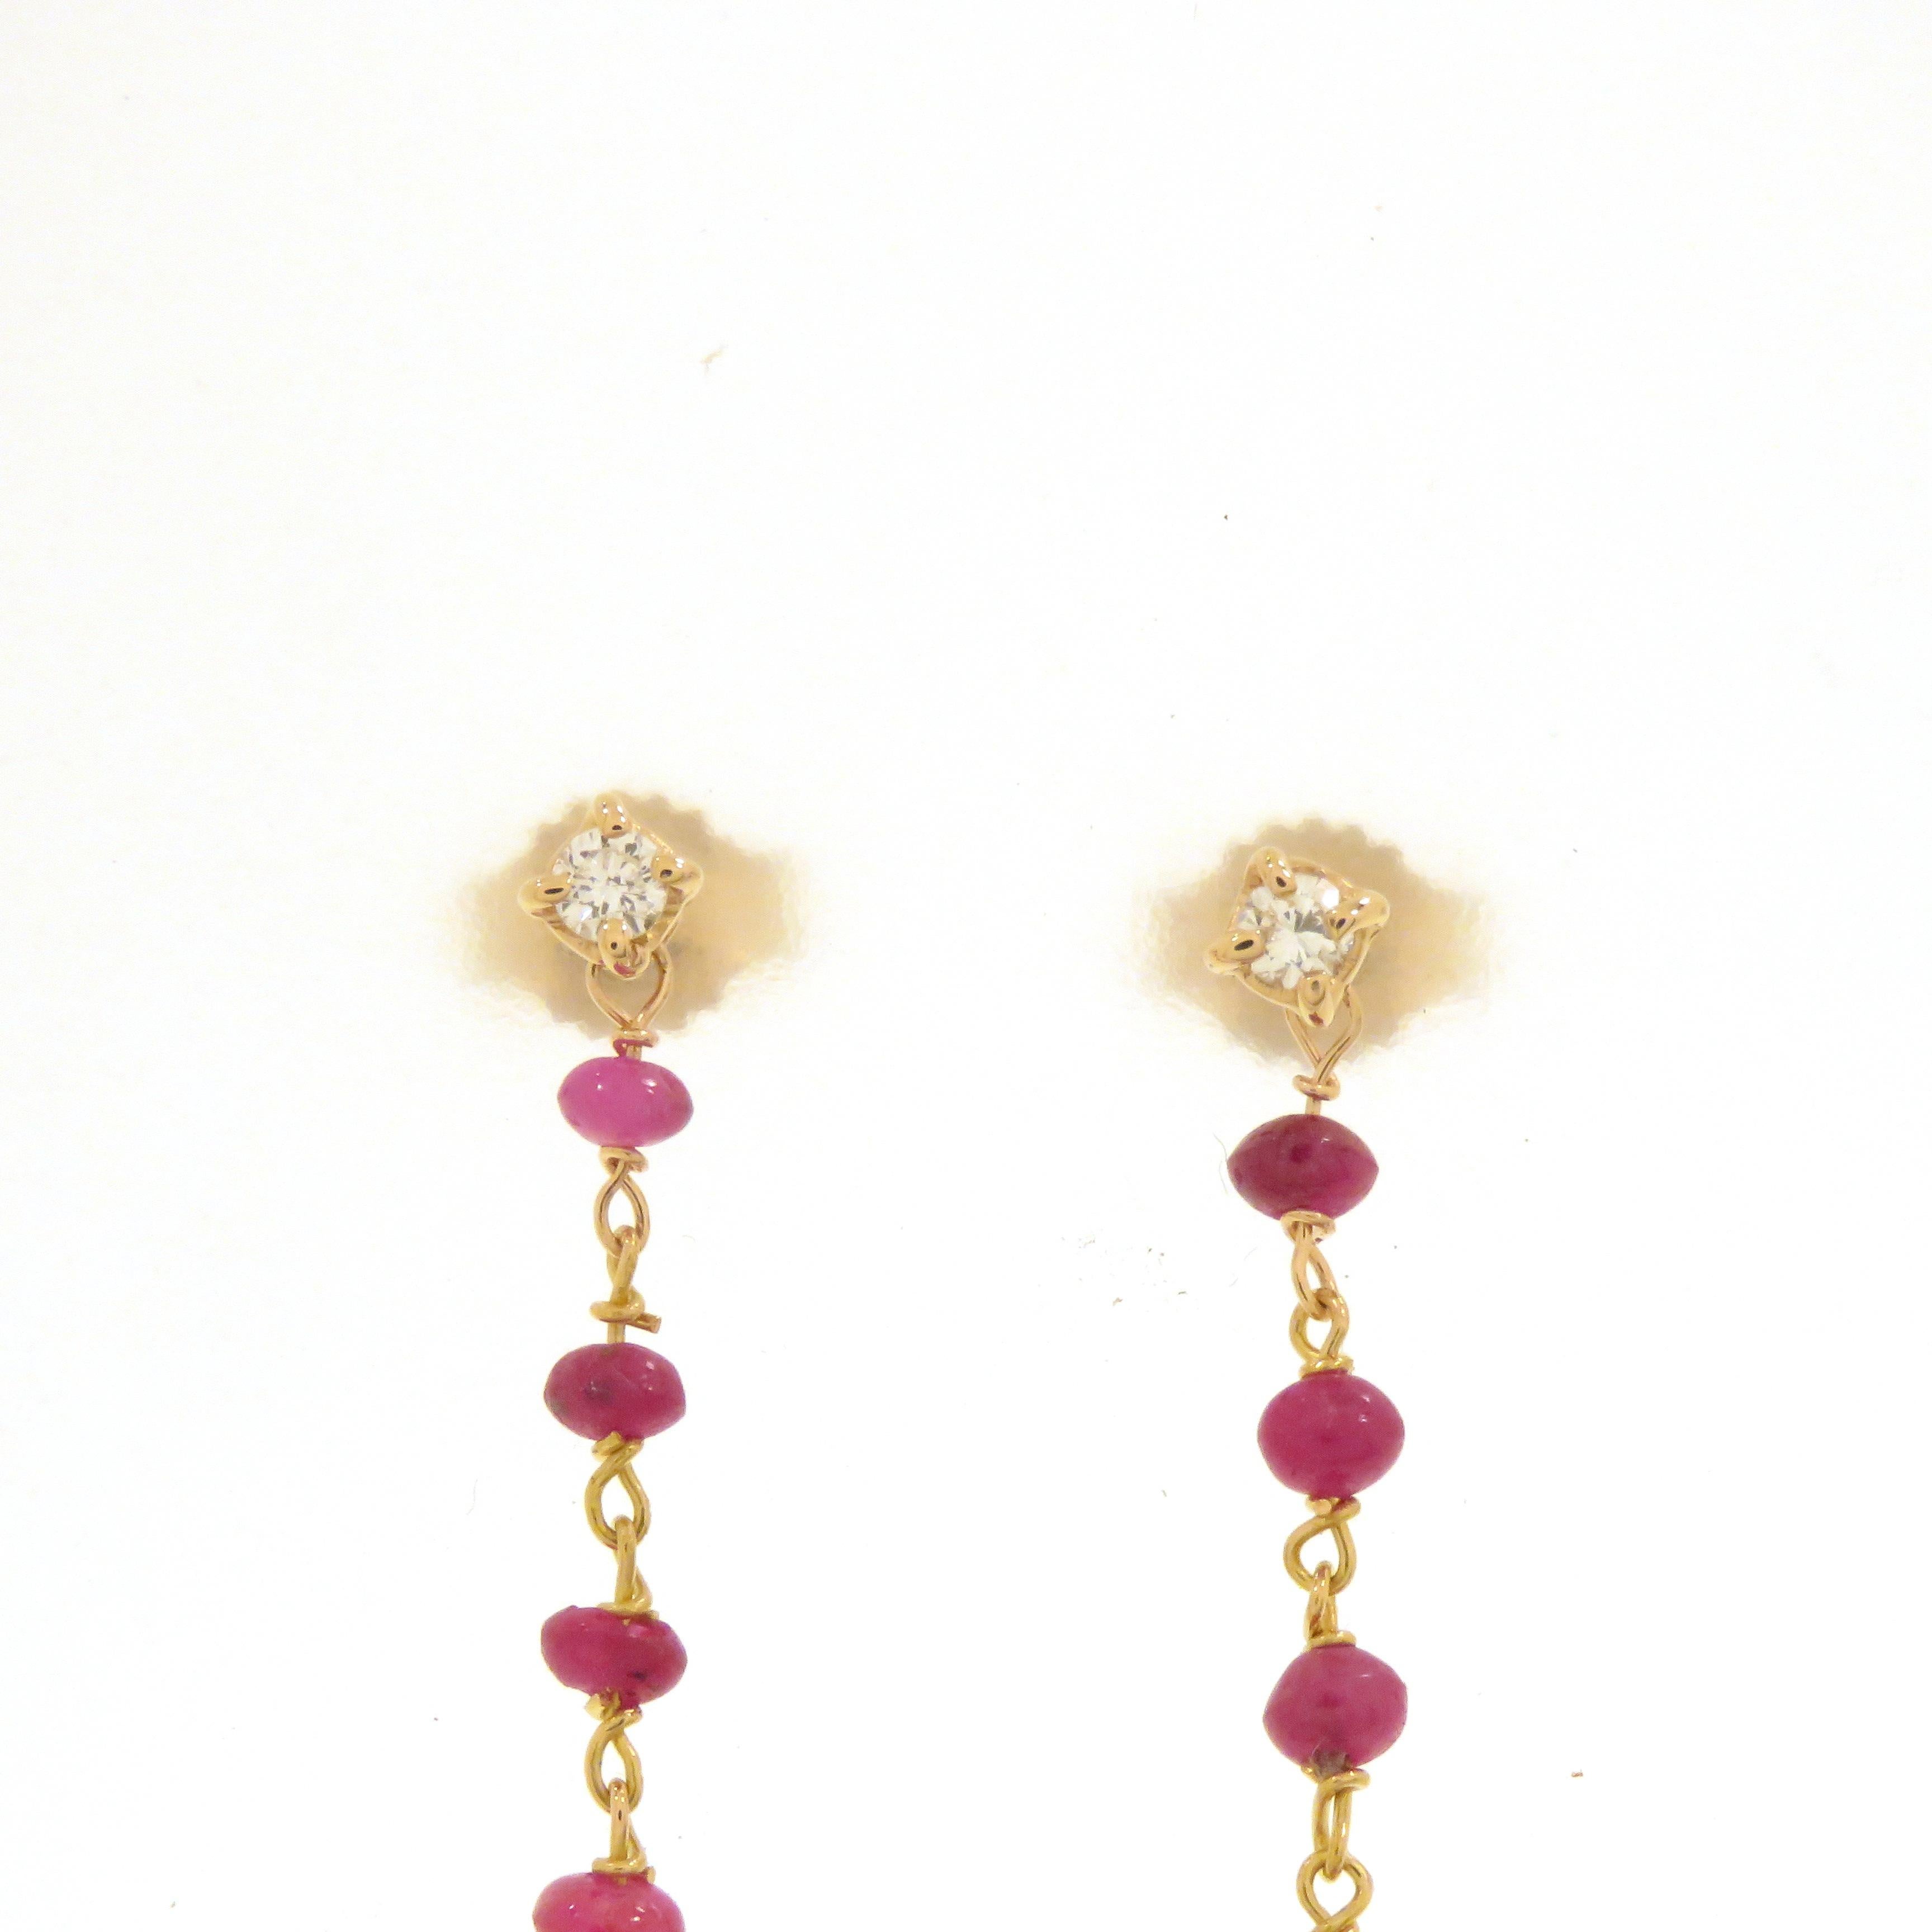 Orecchini in oro rosa 18k realizzati a mano con due diamanti taglio brillante 2x0.05 totale 0.10 ct. incastonati in un griffe con galleria e 11 rubini per orecchino incastonati a rosario. L'attacco dell'orecchino è a perno con farfalla. Gli